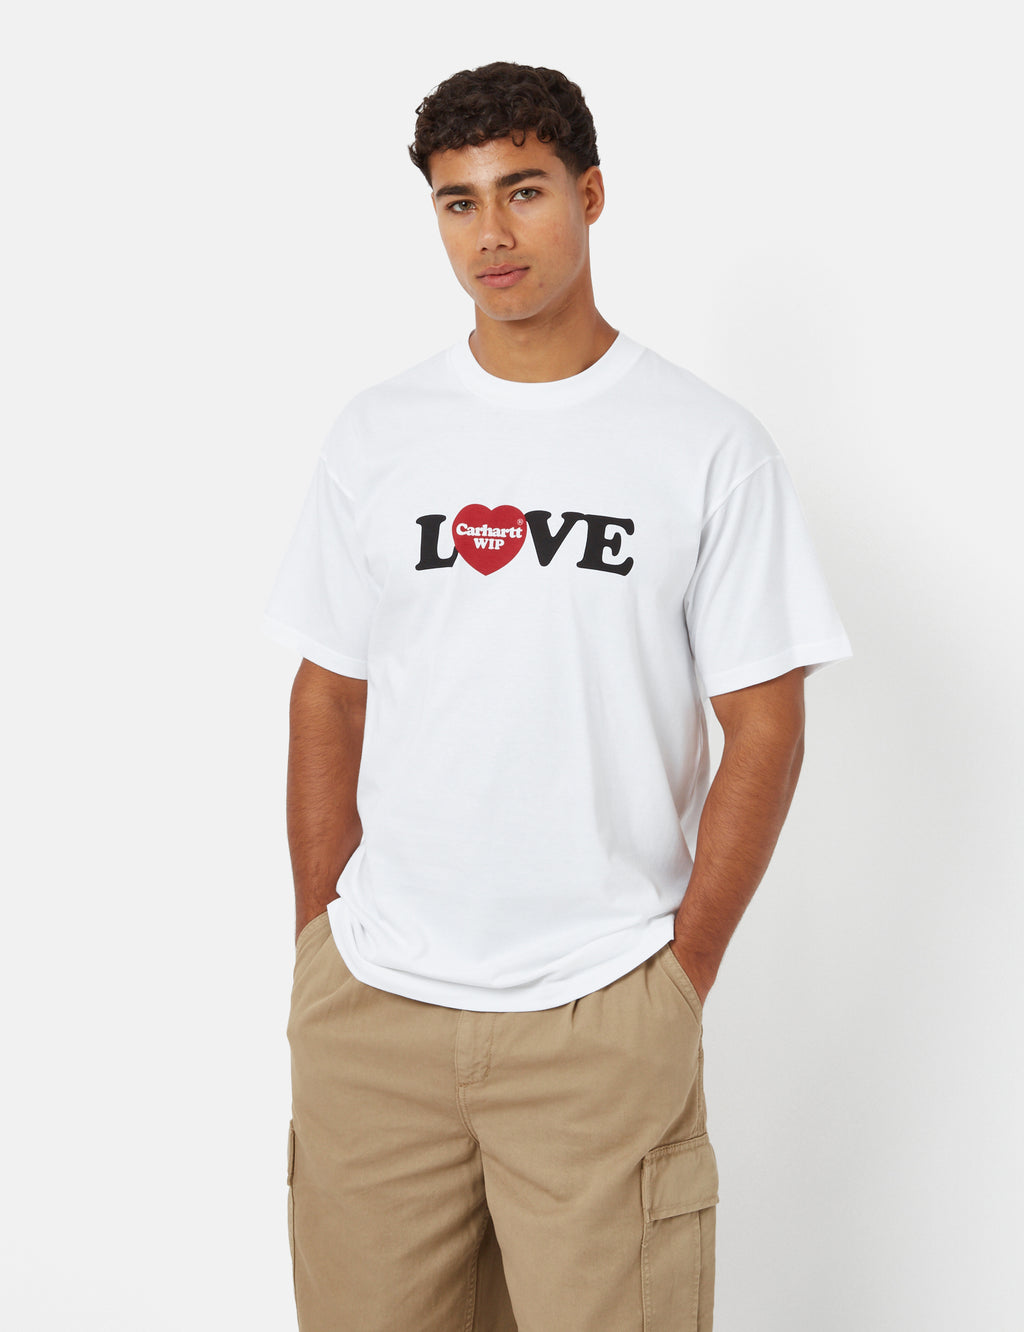 Carhartt-WIP Love T-Shirt (Organic) - White I Urban Excess. – URBAN EXCESS